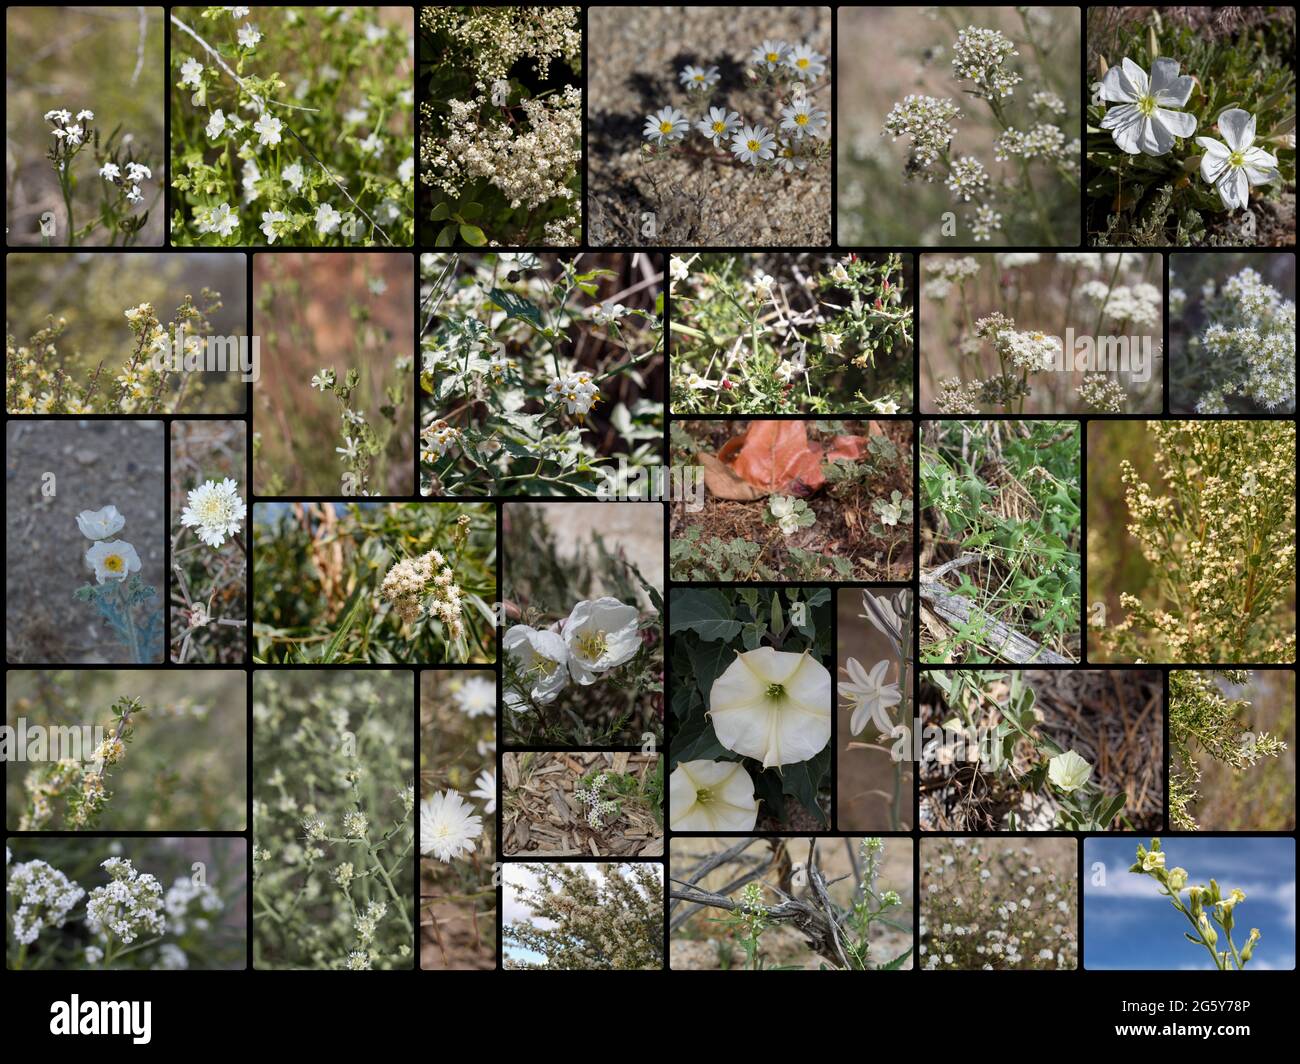 32 especies de plantas indígenas del sur de California que florecen blancas crecen silvestres en su hábitat nativo. Fotografiado durante 2020. Foto de stock